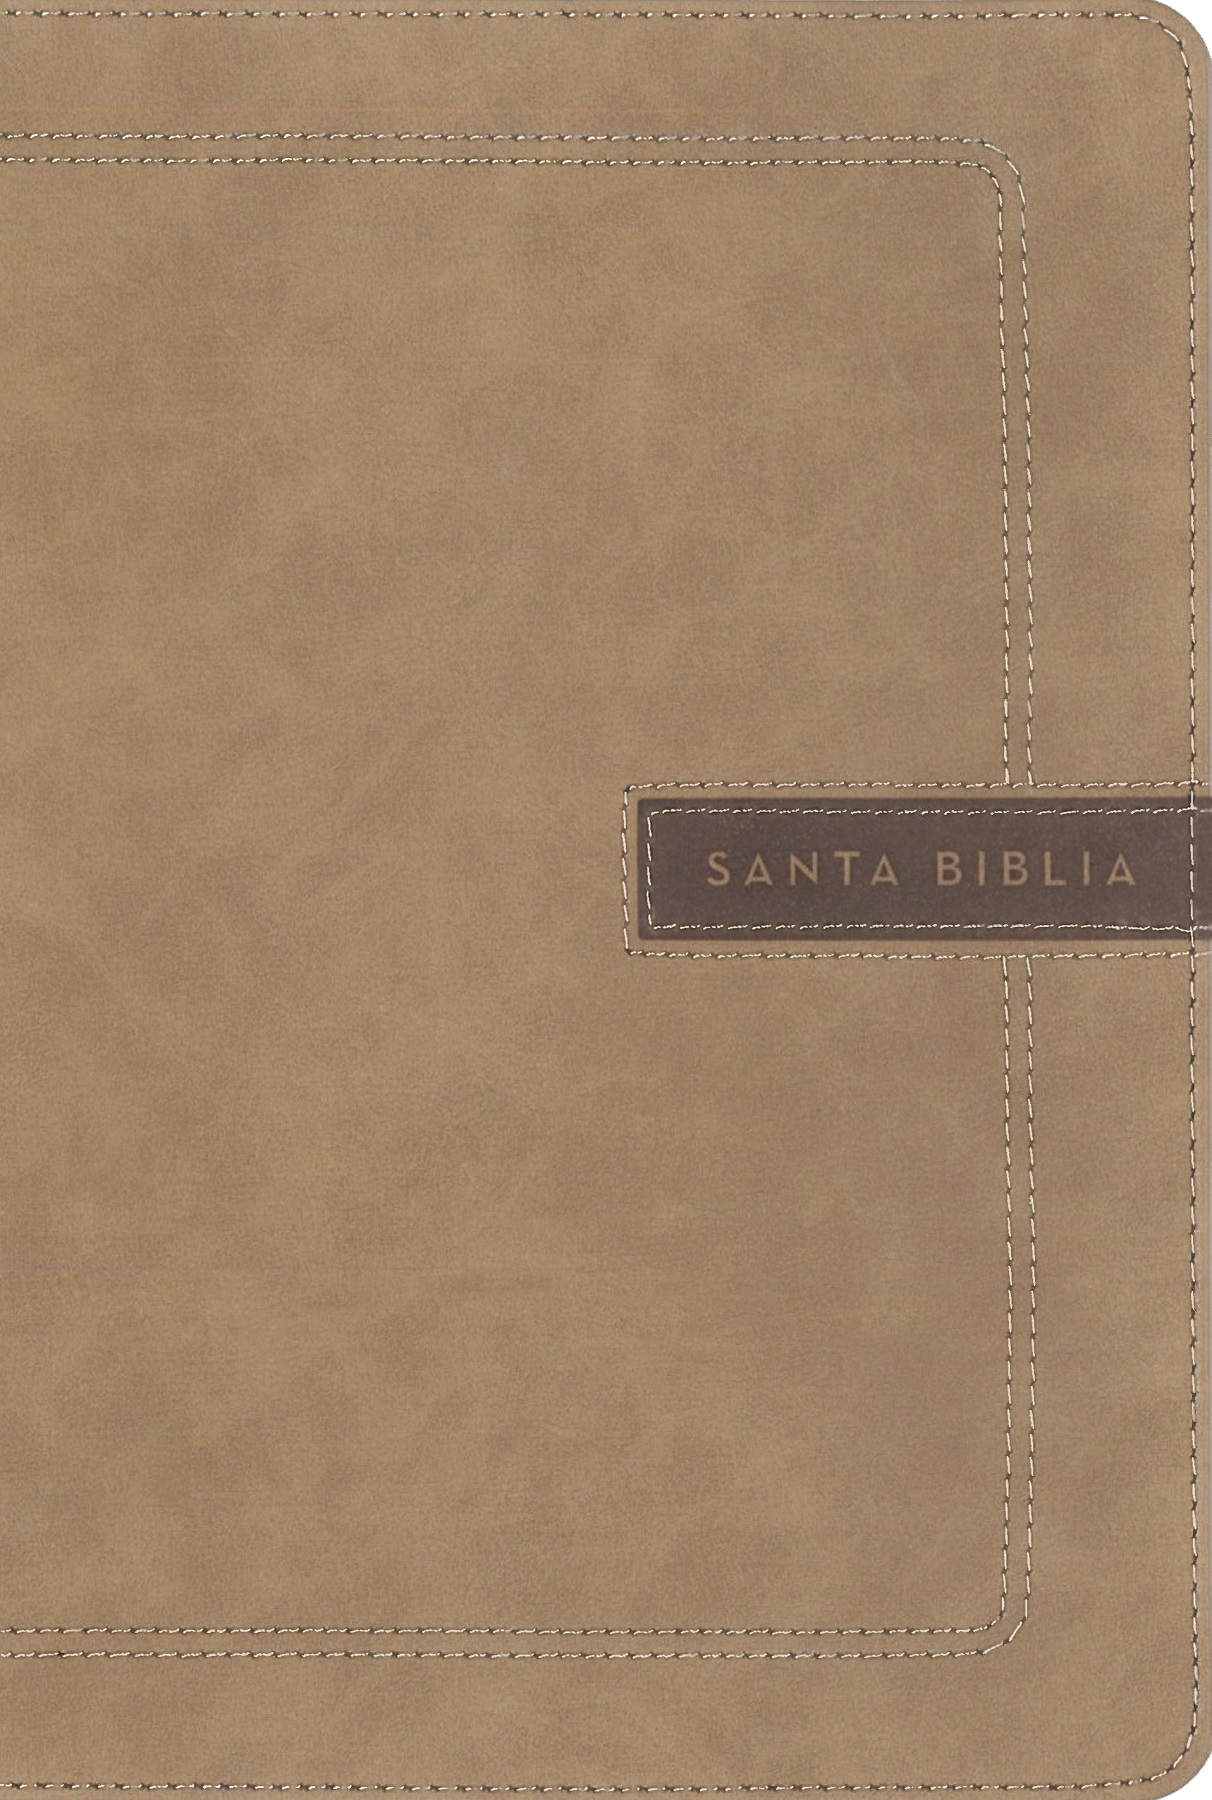 NBLA Santa Biblia - image 1